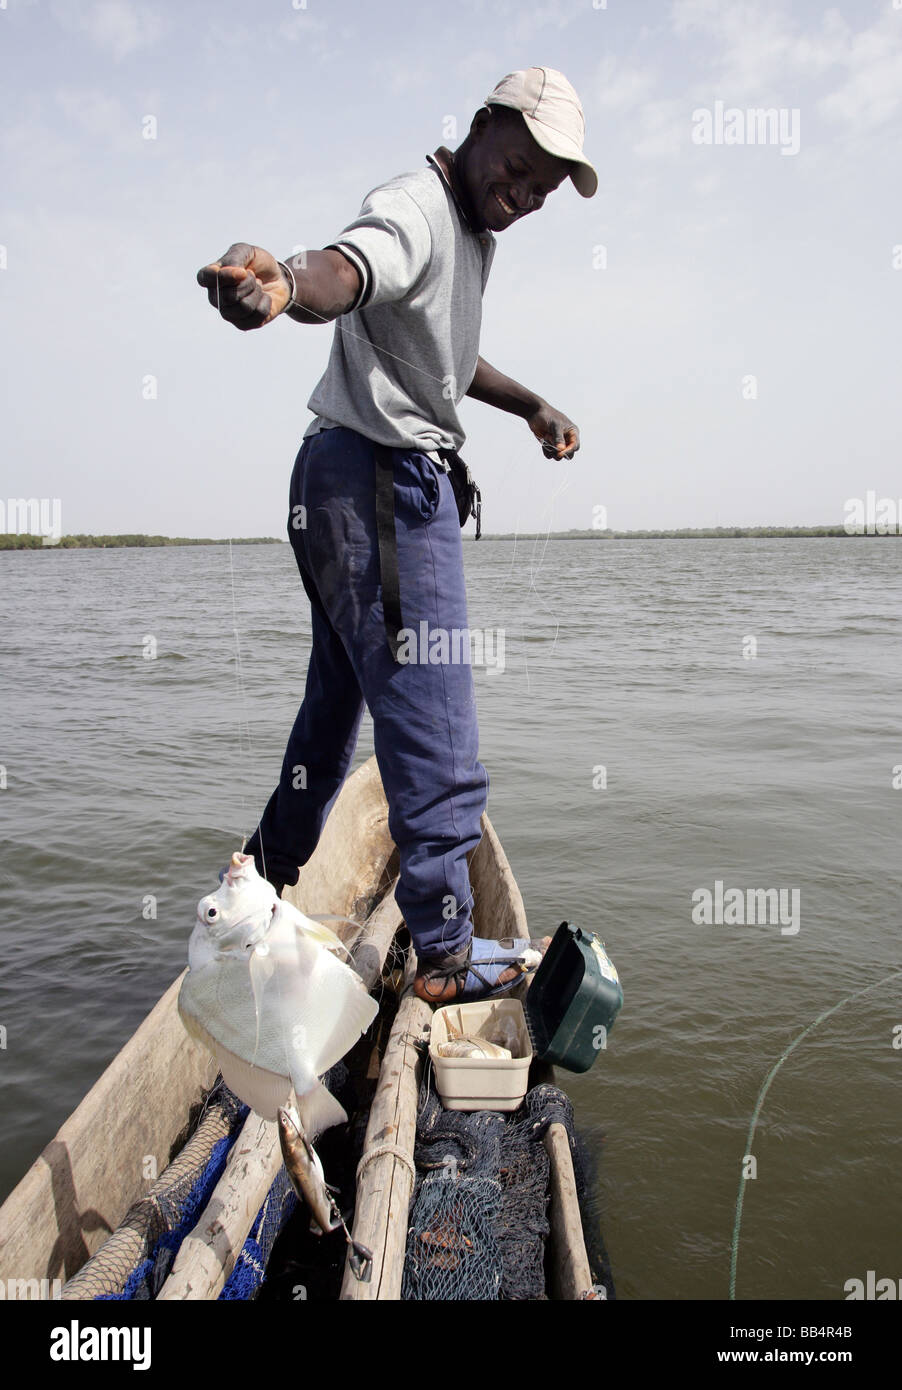 Senegal: pescatore nella sua piroga sul fiume Casamance Foto Stock